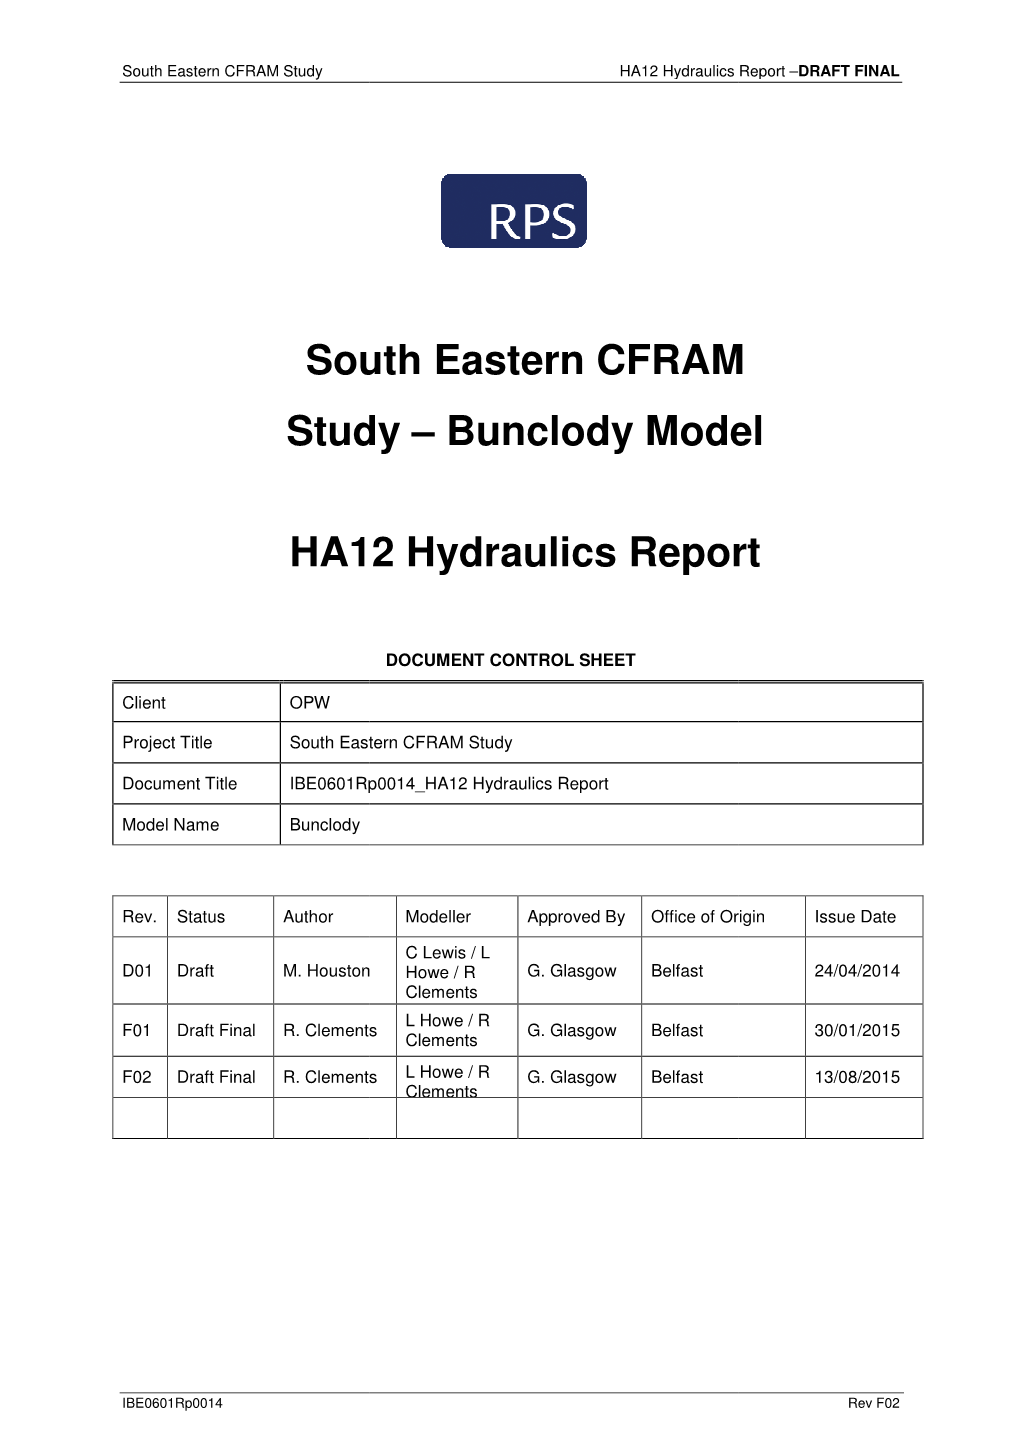 Bunclody Model HA12 Hydraulics